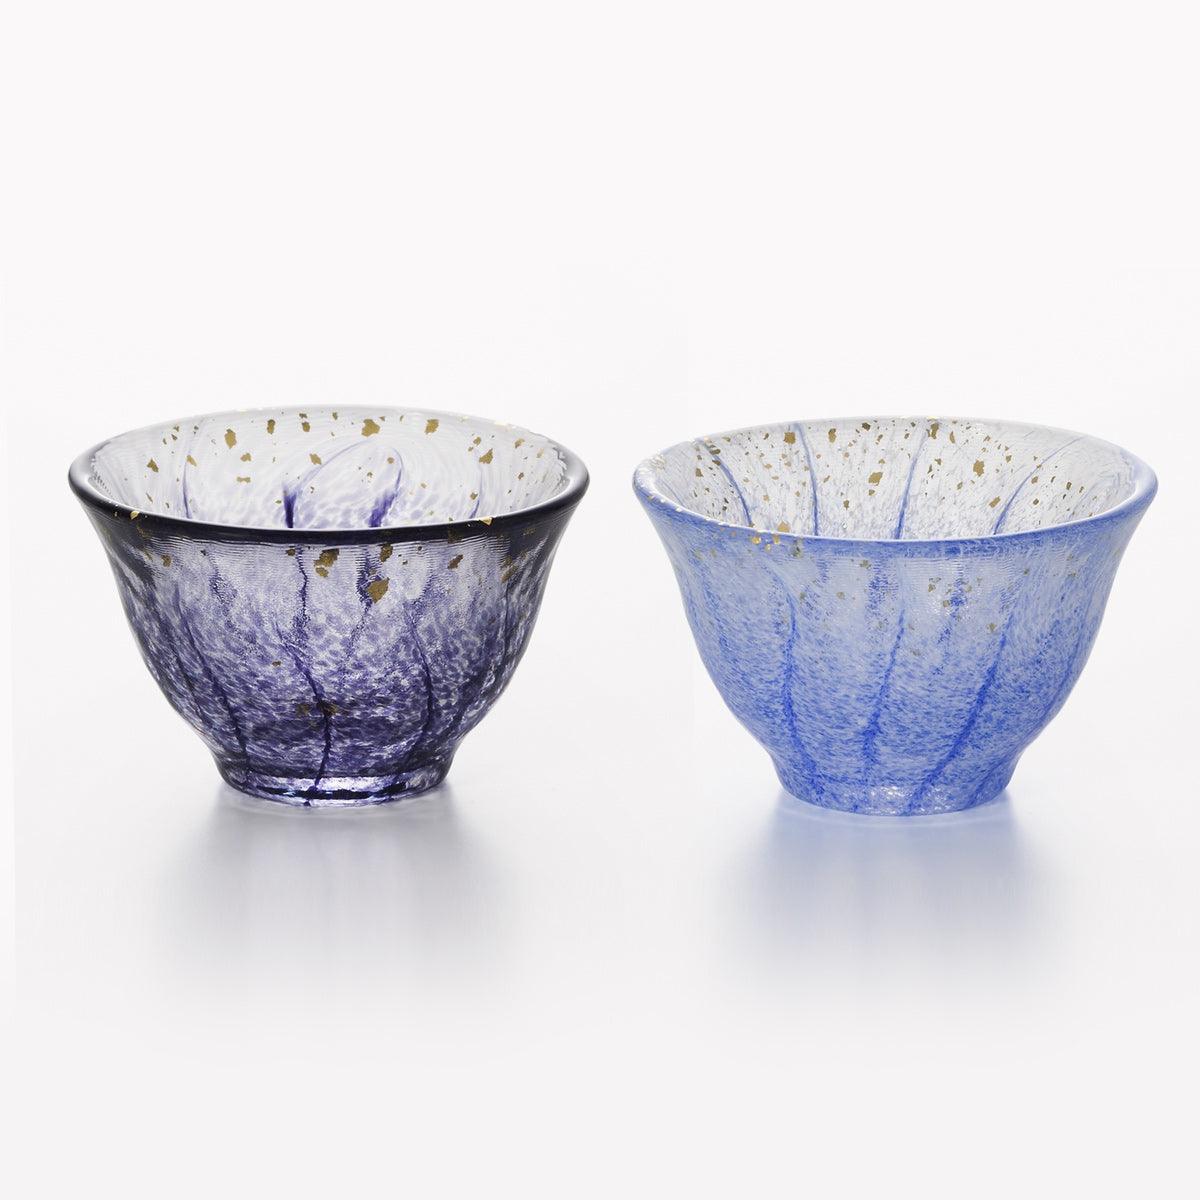 (一對價)70cc【Aderia】醉紫藤 日本津輕庄内金箔手工玻璃祝杯 - MSA玻璃雕刻